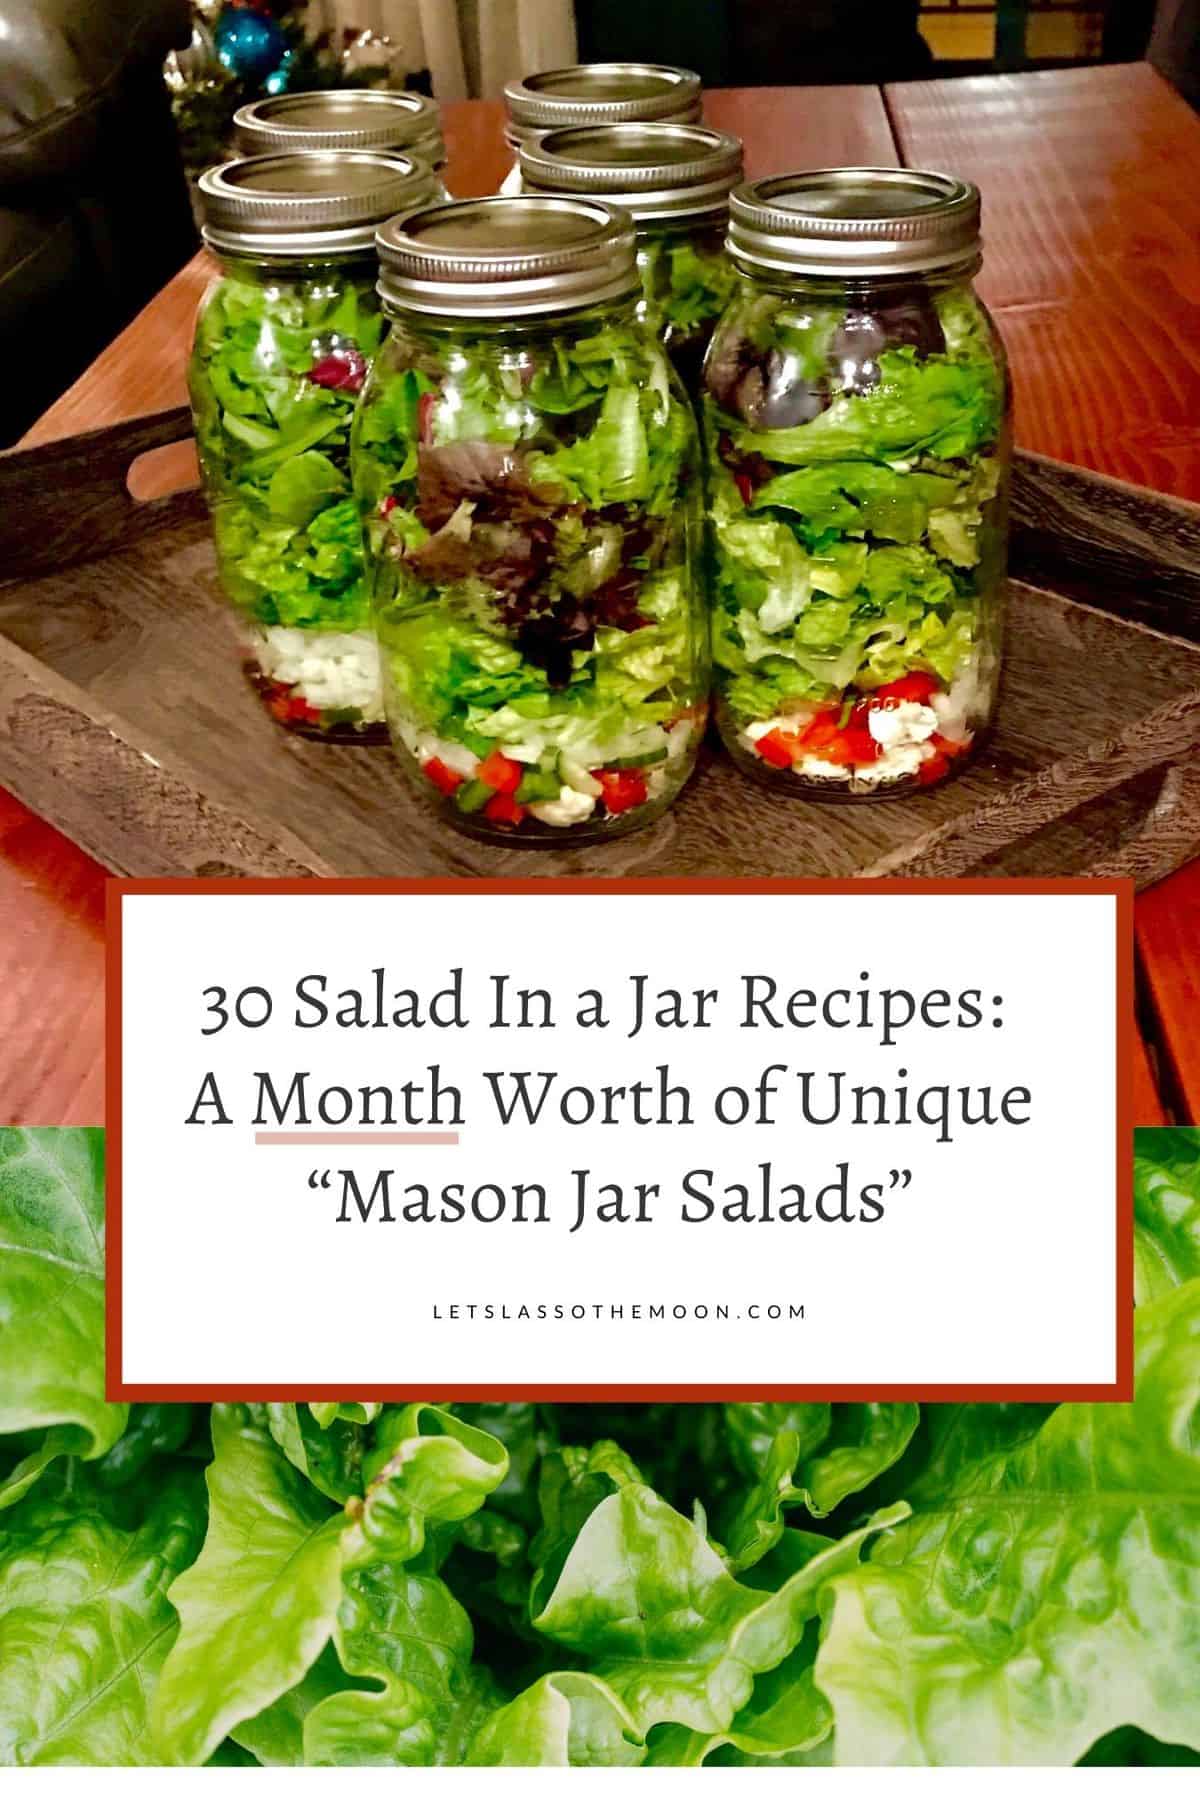 https://letslassothemoon.com/wp-content/uploads/2014/12/salad-in-a-jar.jpg